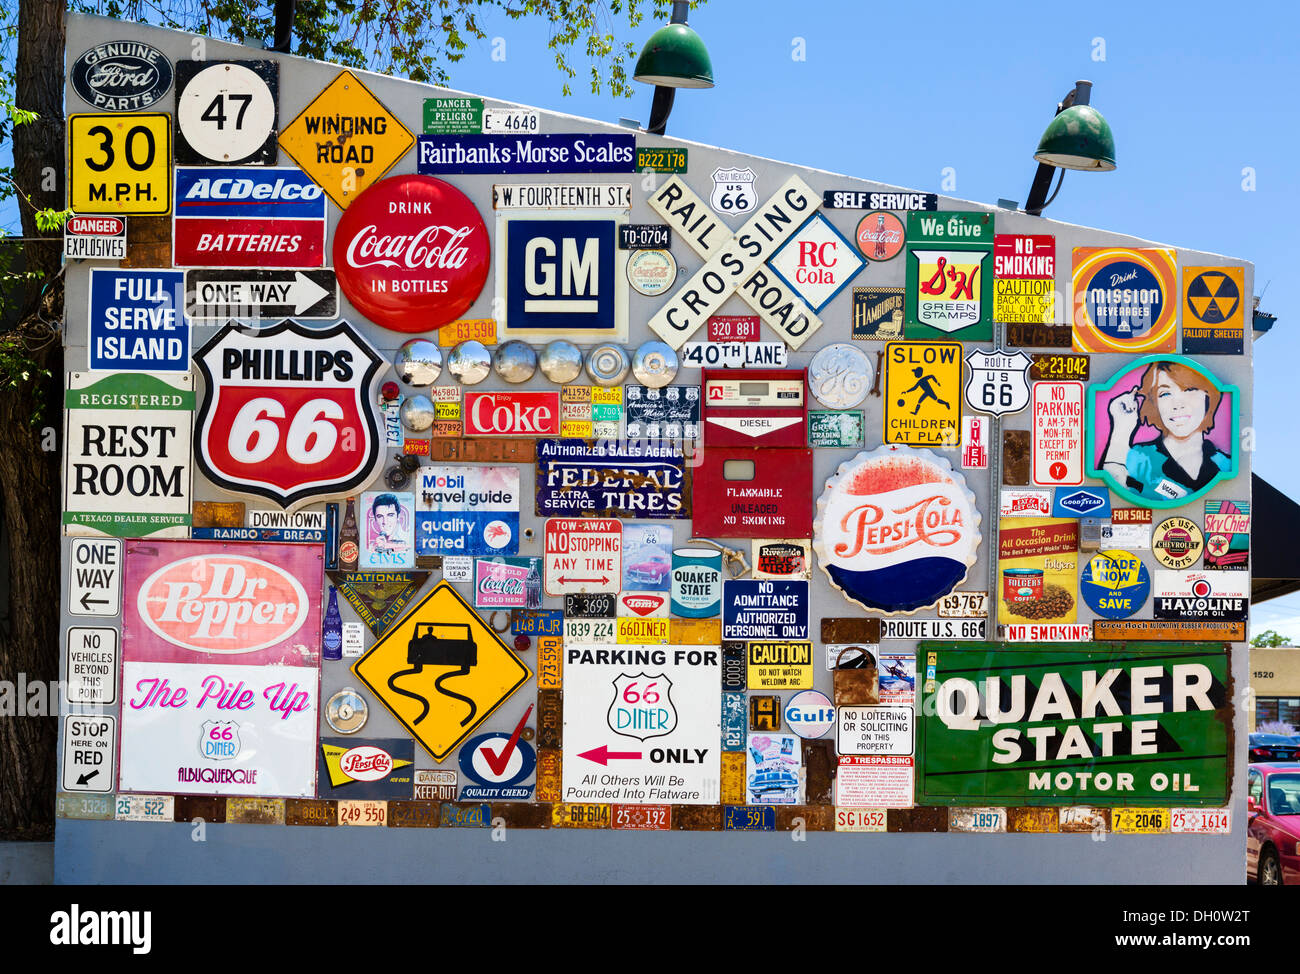 Alte Werbung Schilder, Verkehrszeichen und Fahrzeug-Kfz-Kennzeichen außerhalb 66 Diner auf Central Ave (alte Route 66), Albuquerque, New Mexico, USA Stockfoto